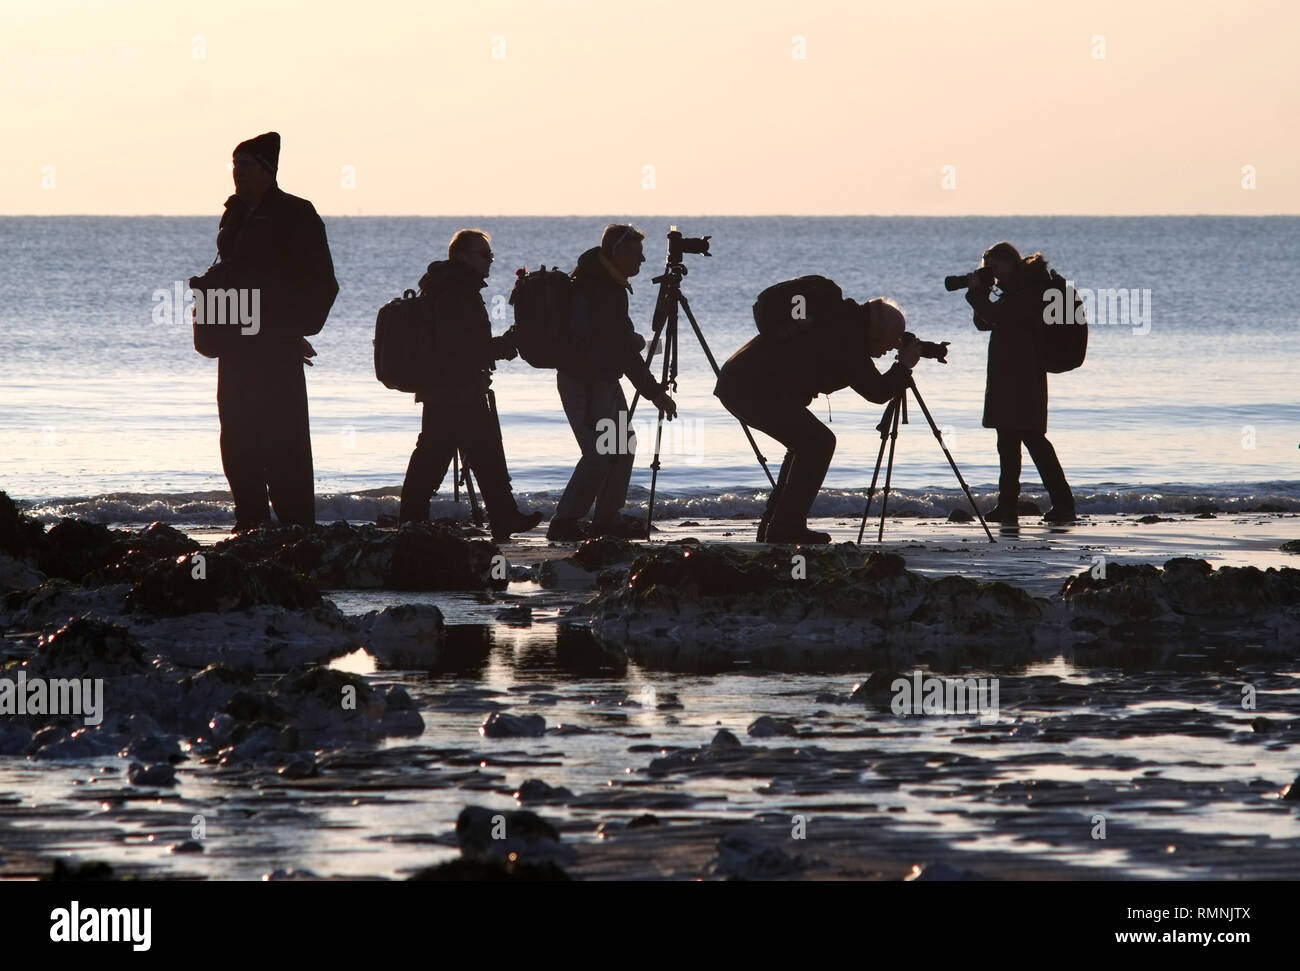 Groupe de photographes amateurs de photographier le coucher de soleil sur une plage. Banque D'Images